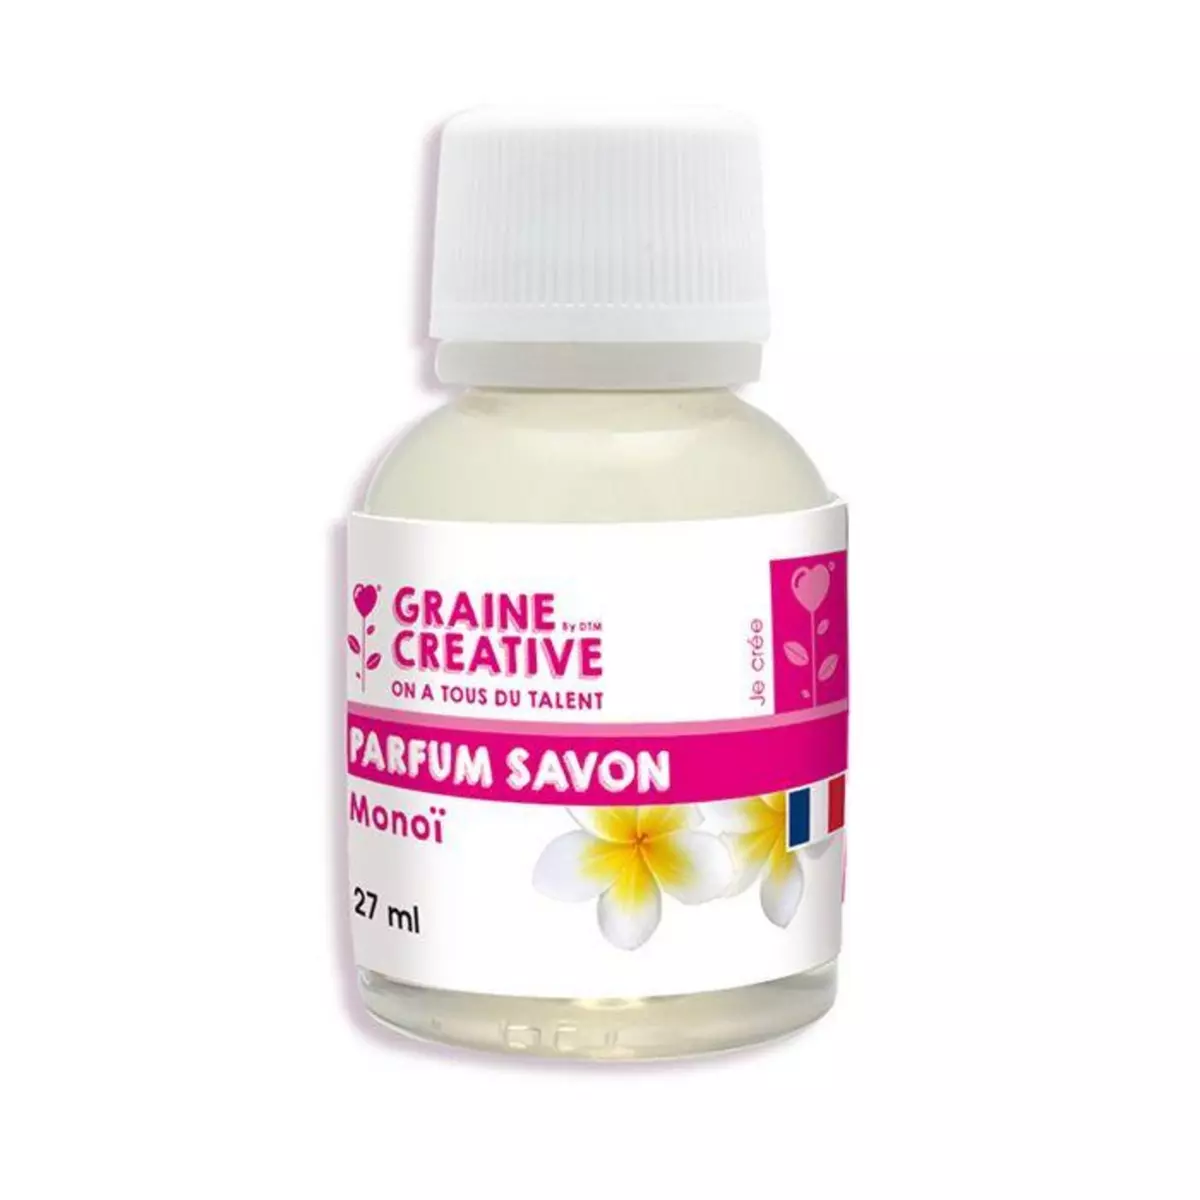 Graine créative Parfum pour savon 27 ml - Monoï